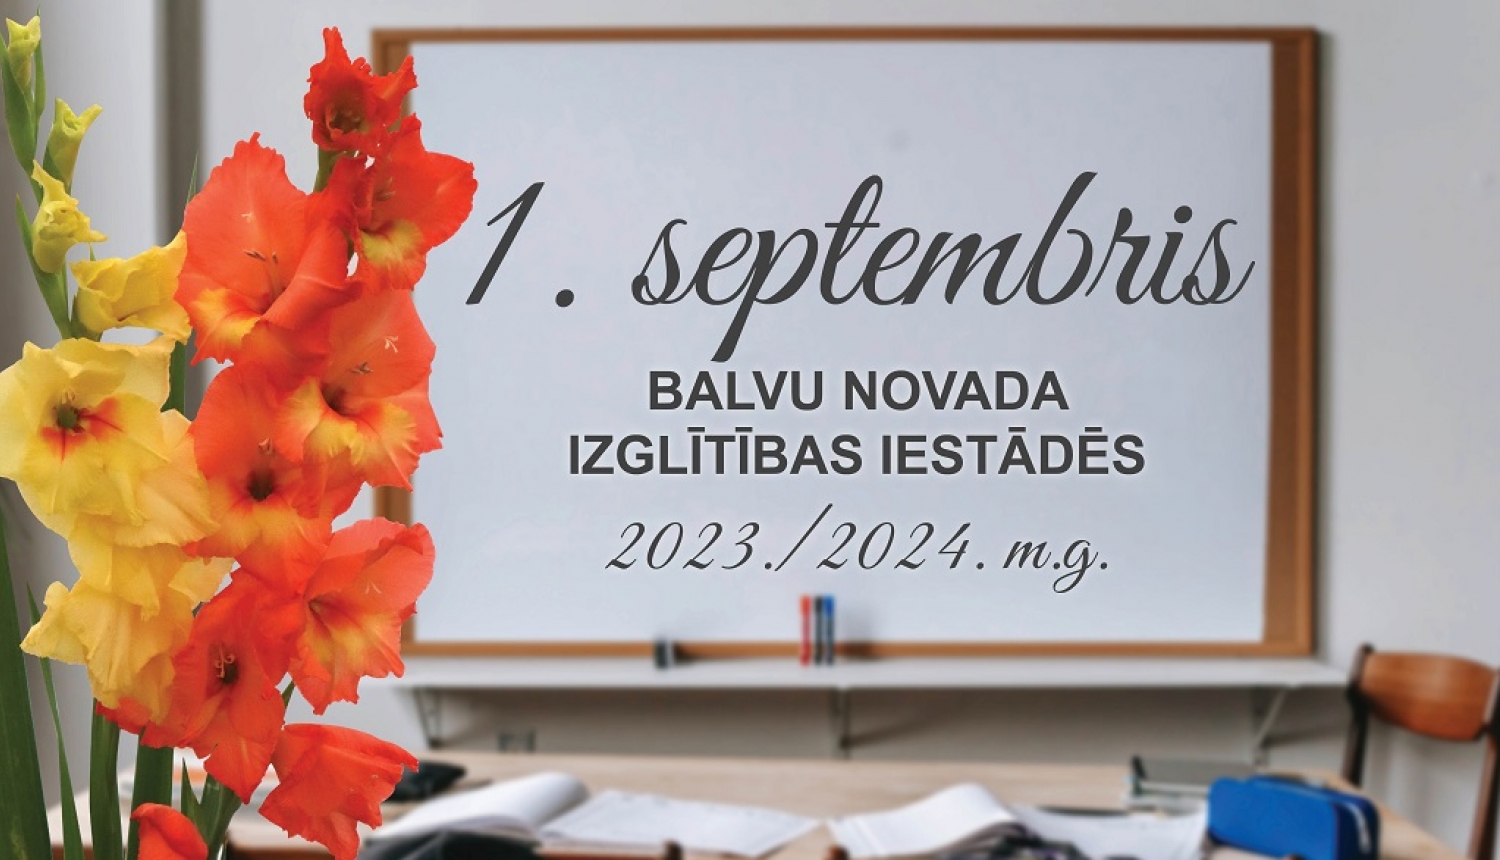 1.septembra norise Balvu novada izglītības iestādēs